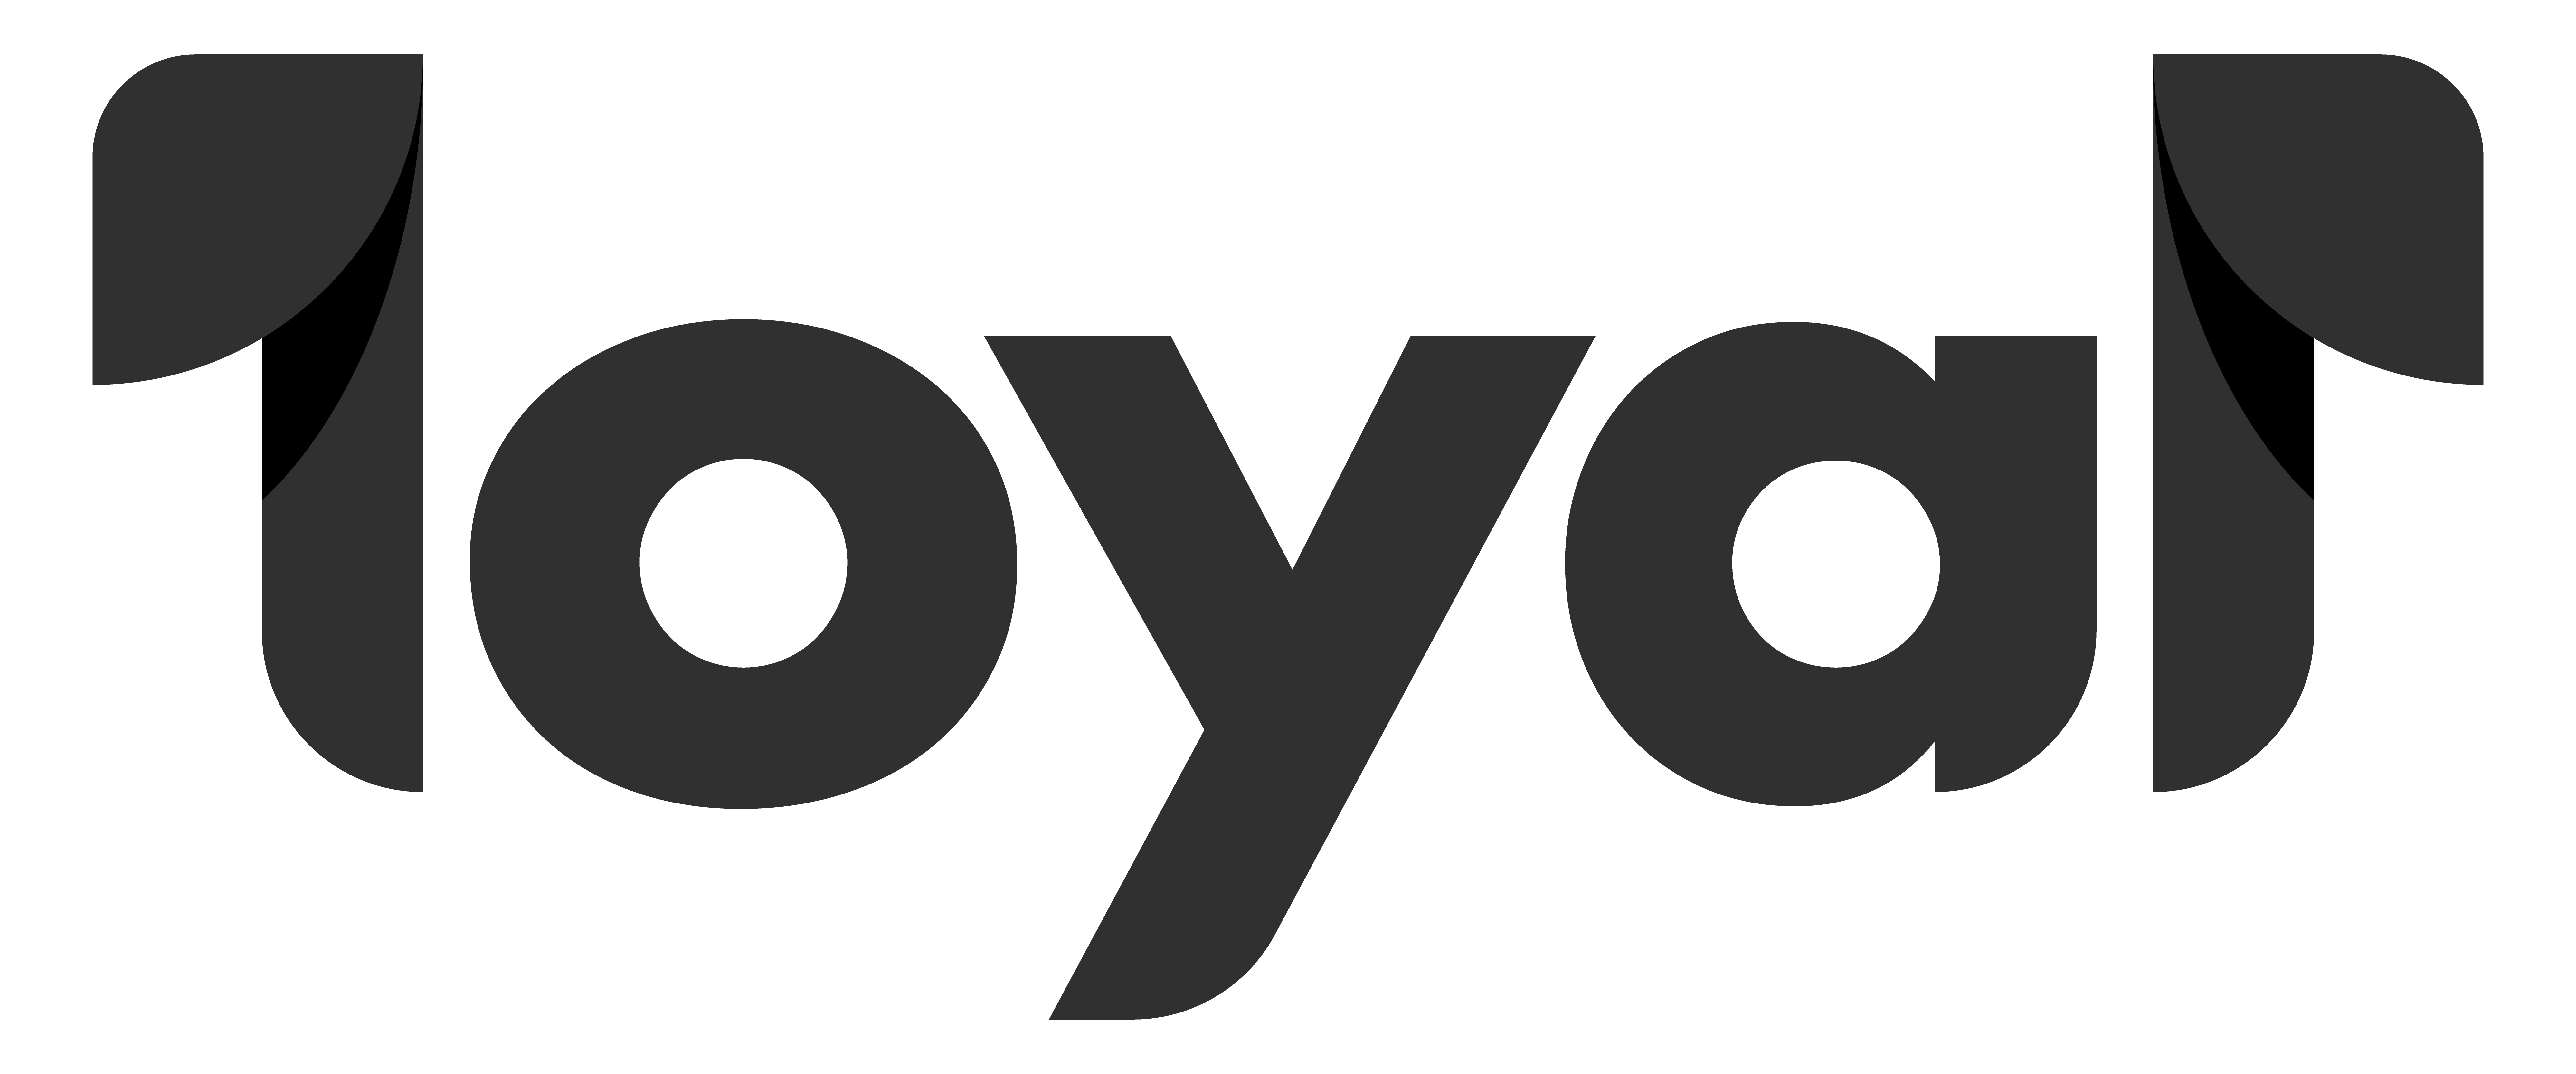 Loyal logo